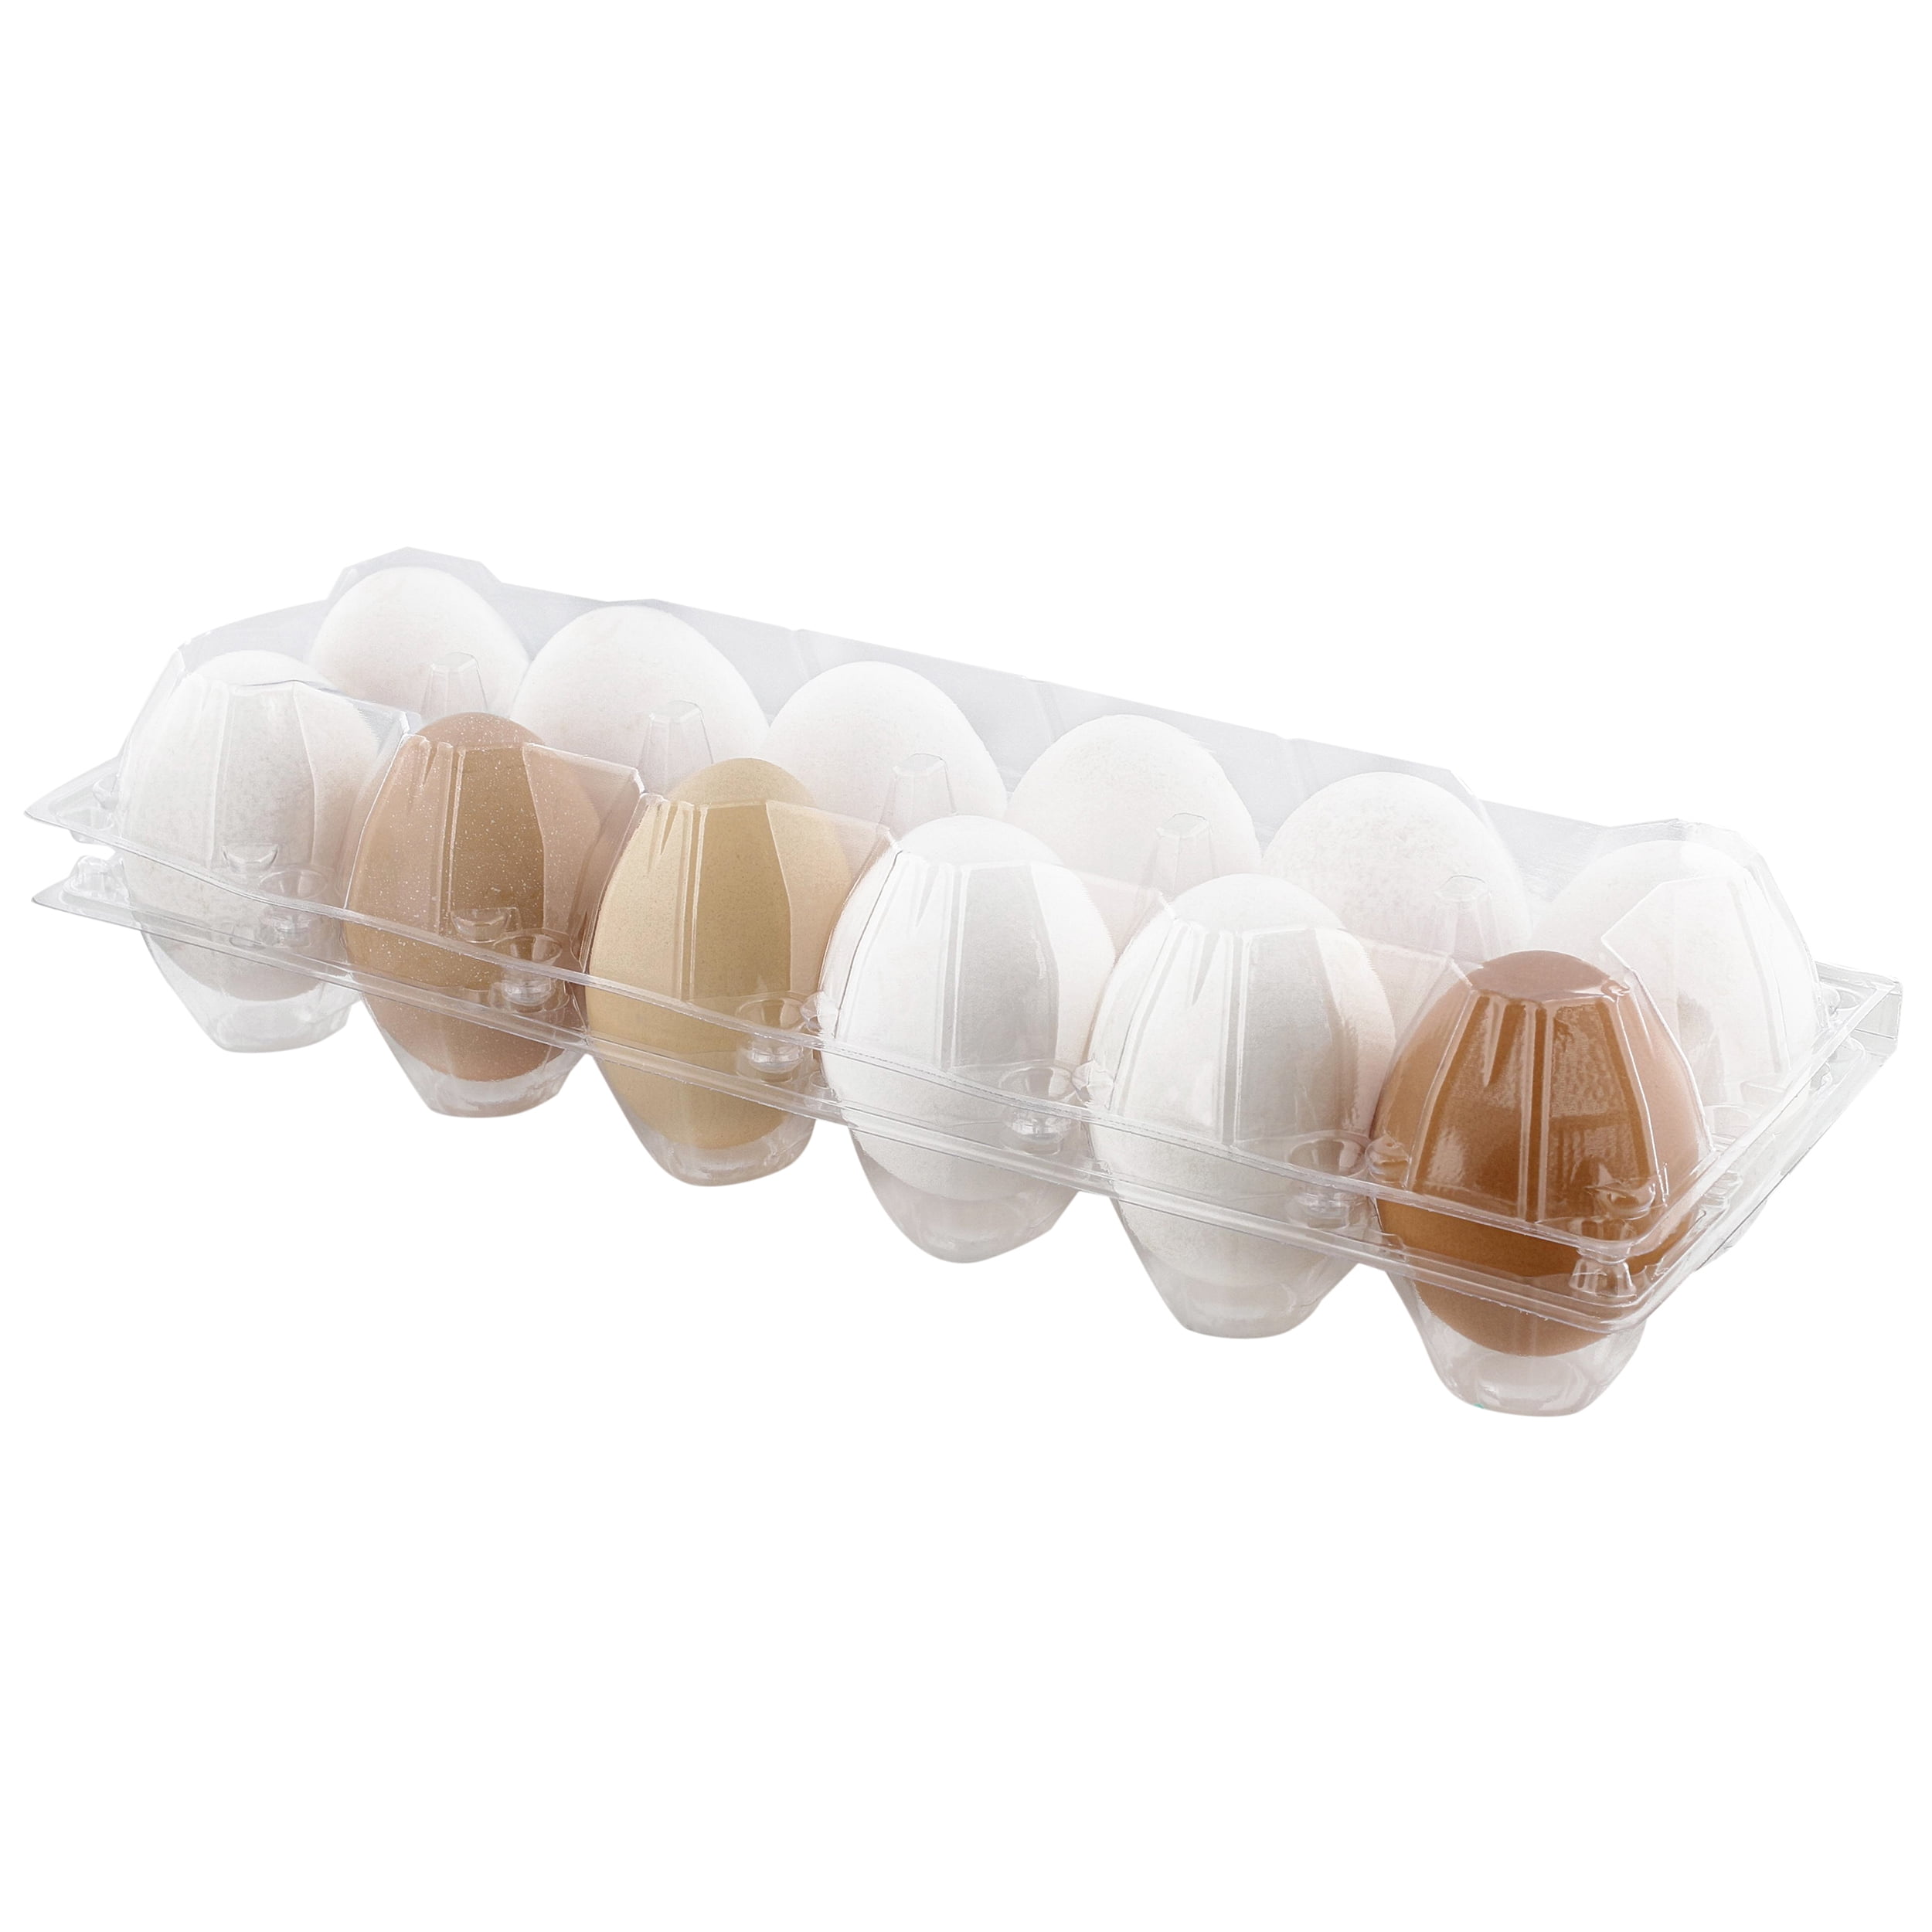 Rural365 Plastic Egg Carton for 12 Eggs 12ct Reusable Chicken Egg Holder 